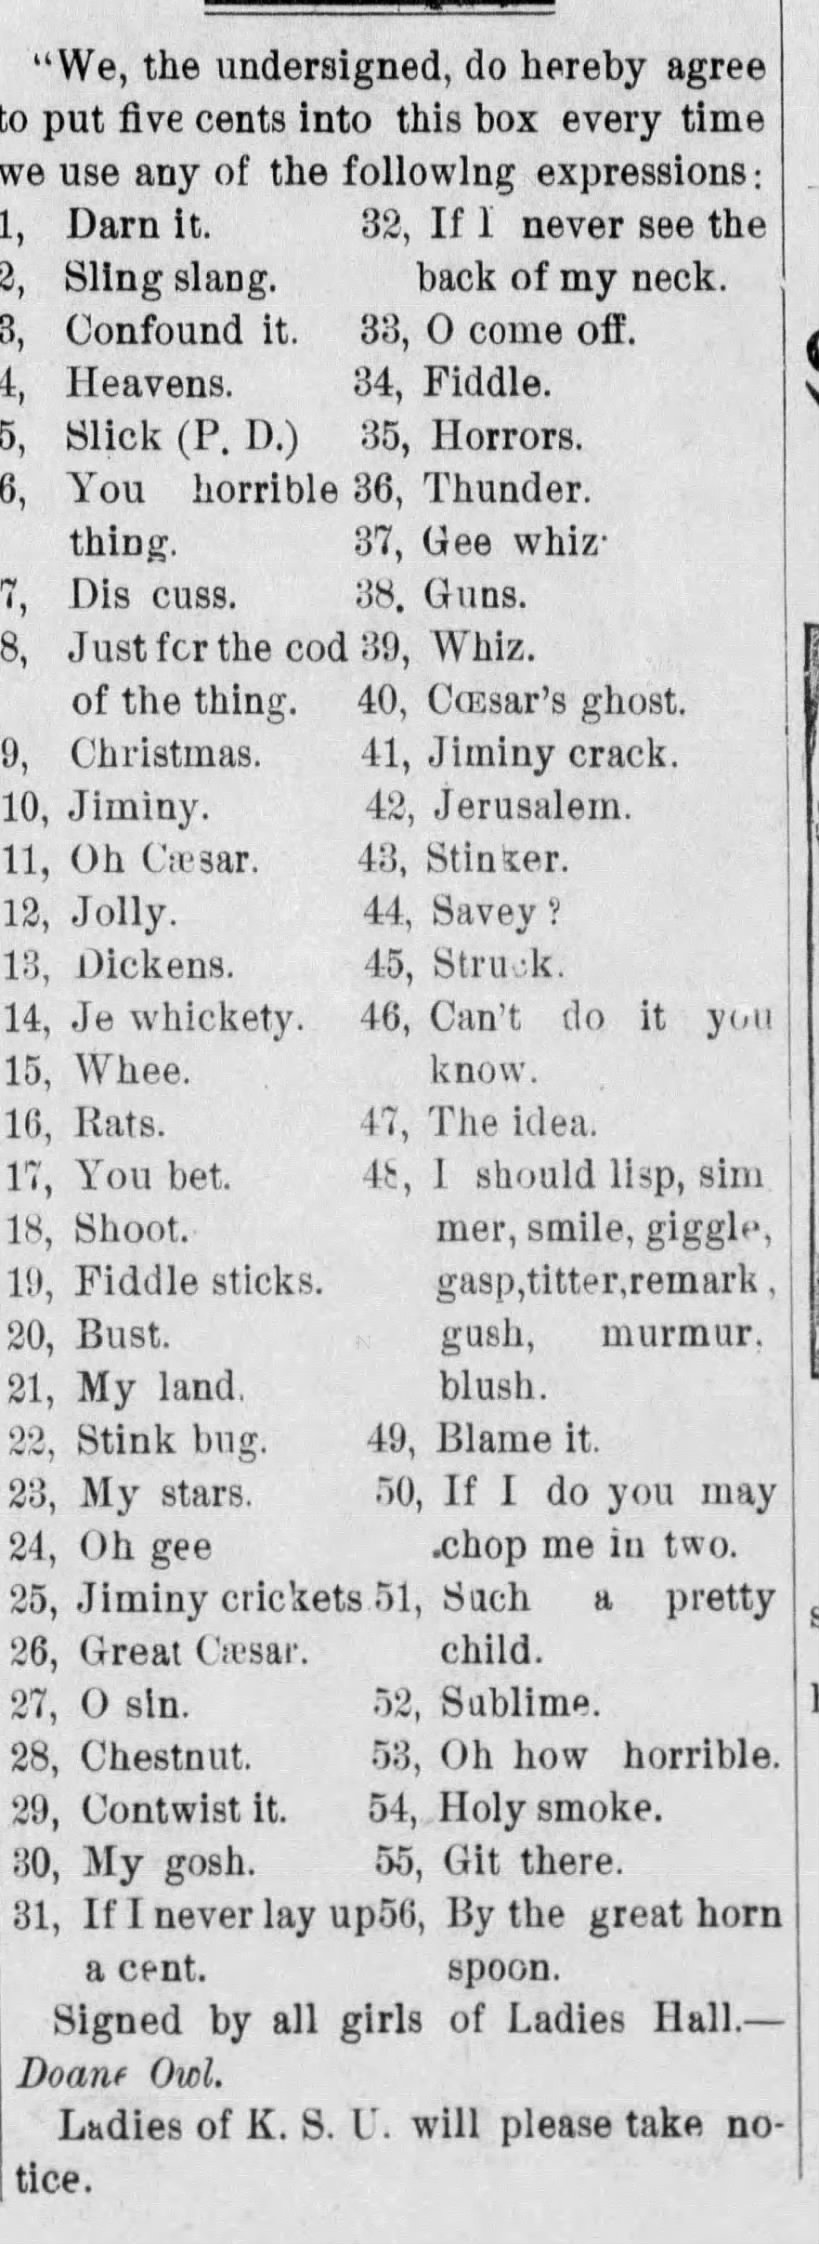 Swear words used by ladies at KSU, 1889.